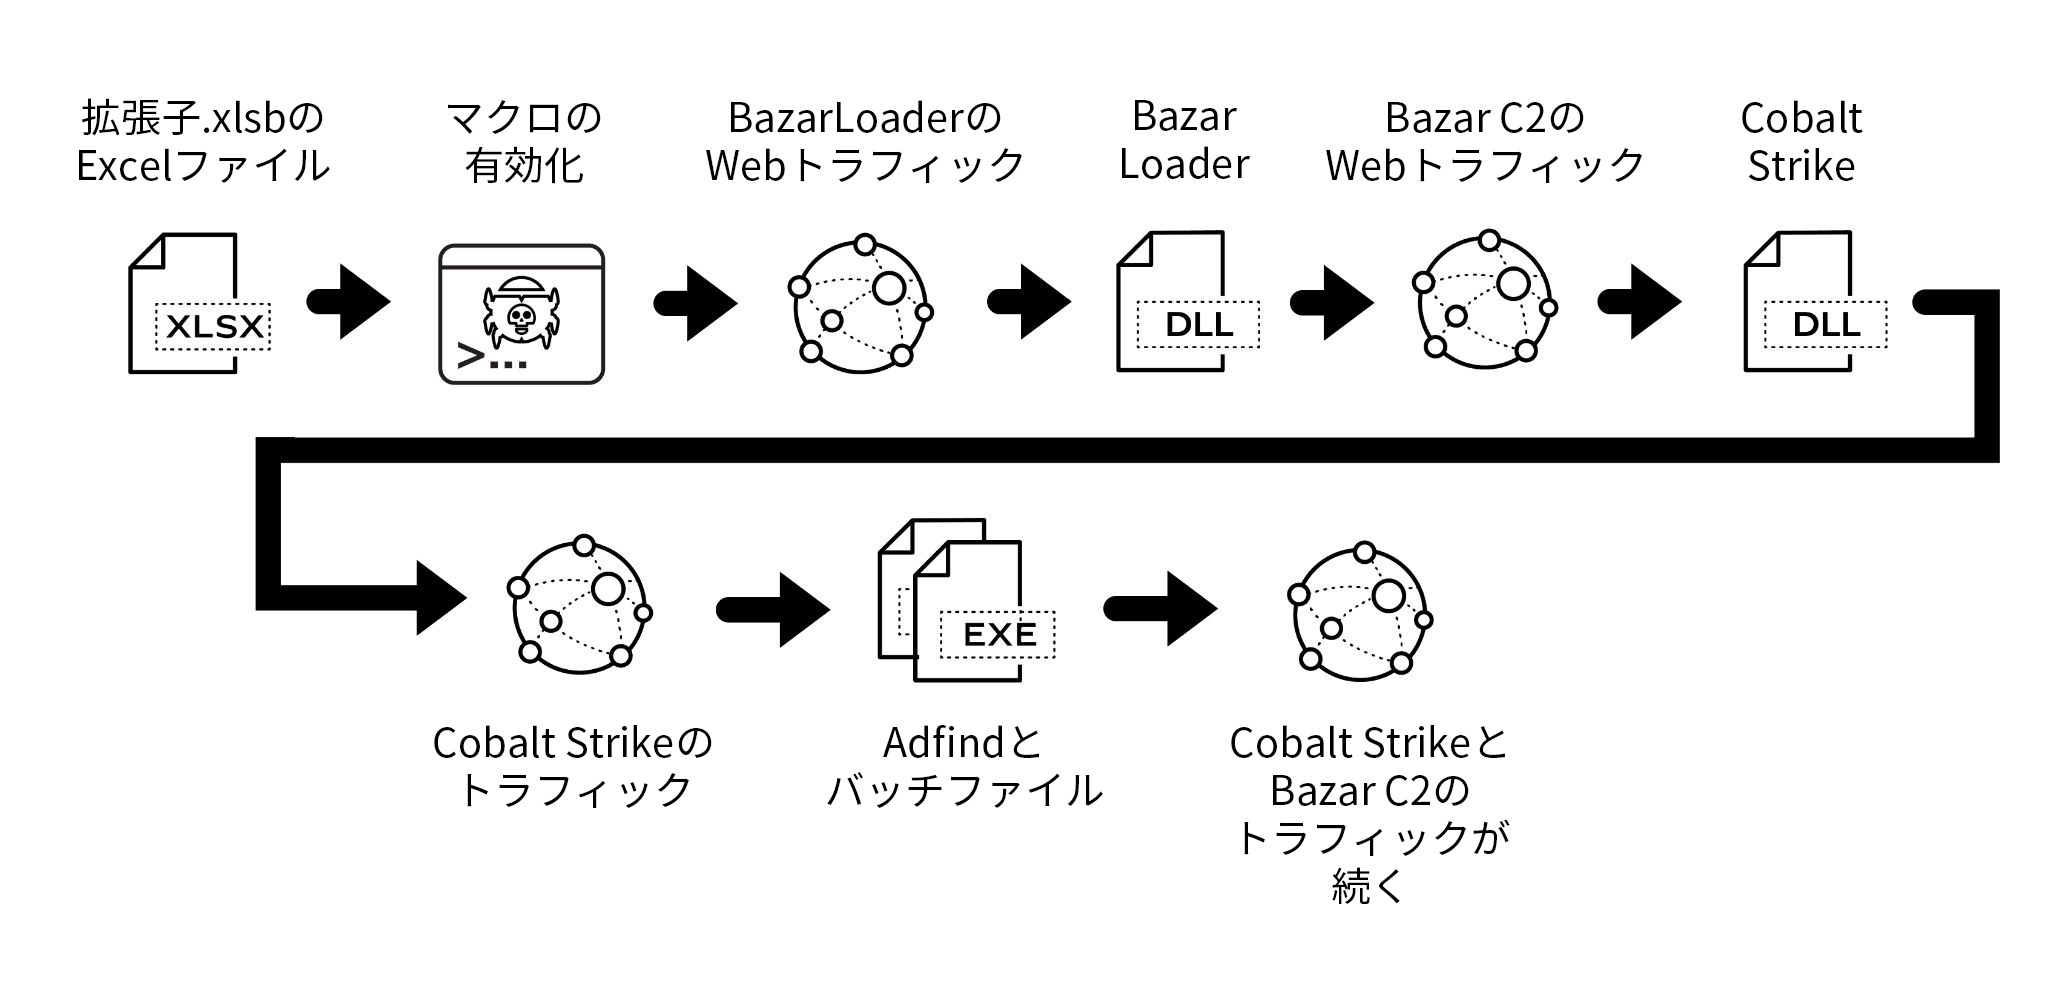 2021年8月19日のBazarLoader感染におけるイベントチェーンファイル拡張子が.xlsbのExcelファイル、マクロの有効化、BazarLoaderのWebトラフィック、BazarLoader、Bazar C2トラフィック、Cobalt Strike、Cobalt StrikeのWebトラフィック、ADfindとバッチファイル、Cobalt StrikeとBazar C2トラフィック（継続）。